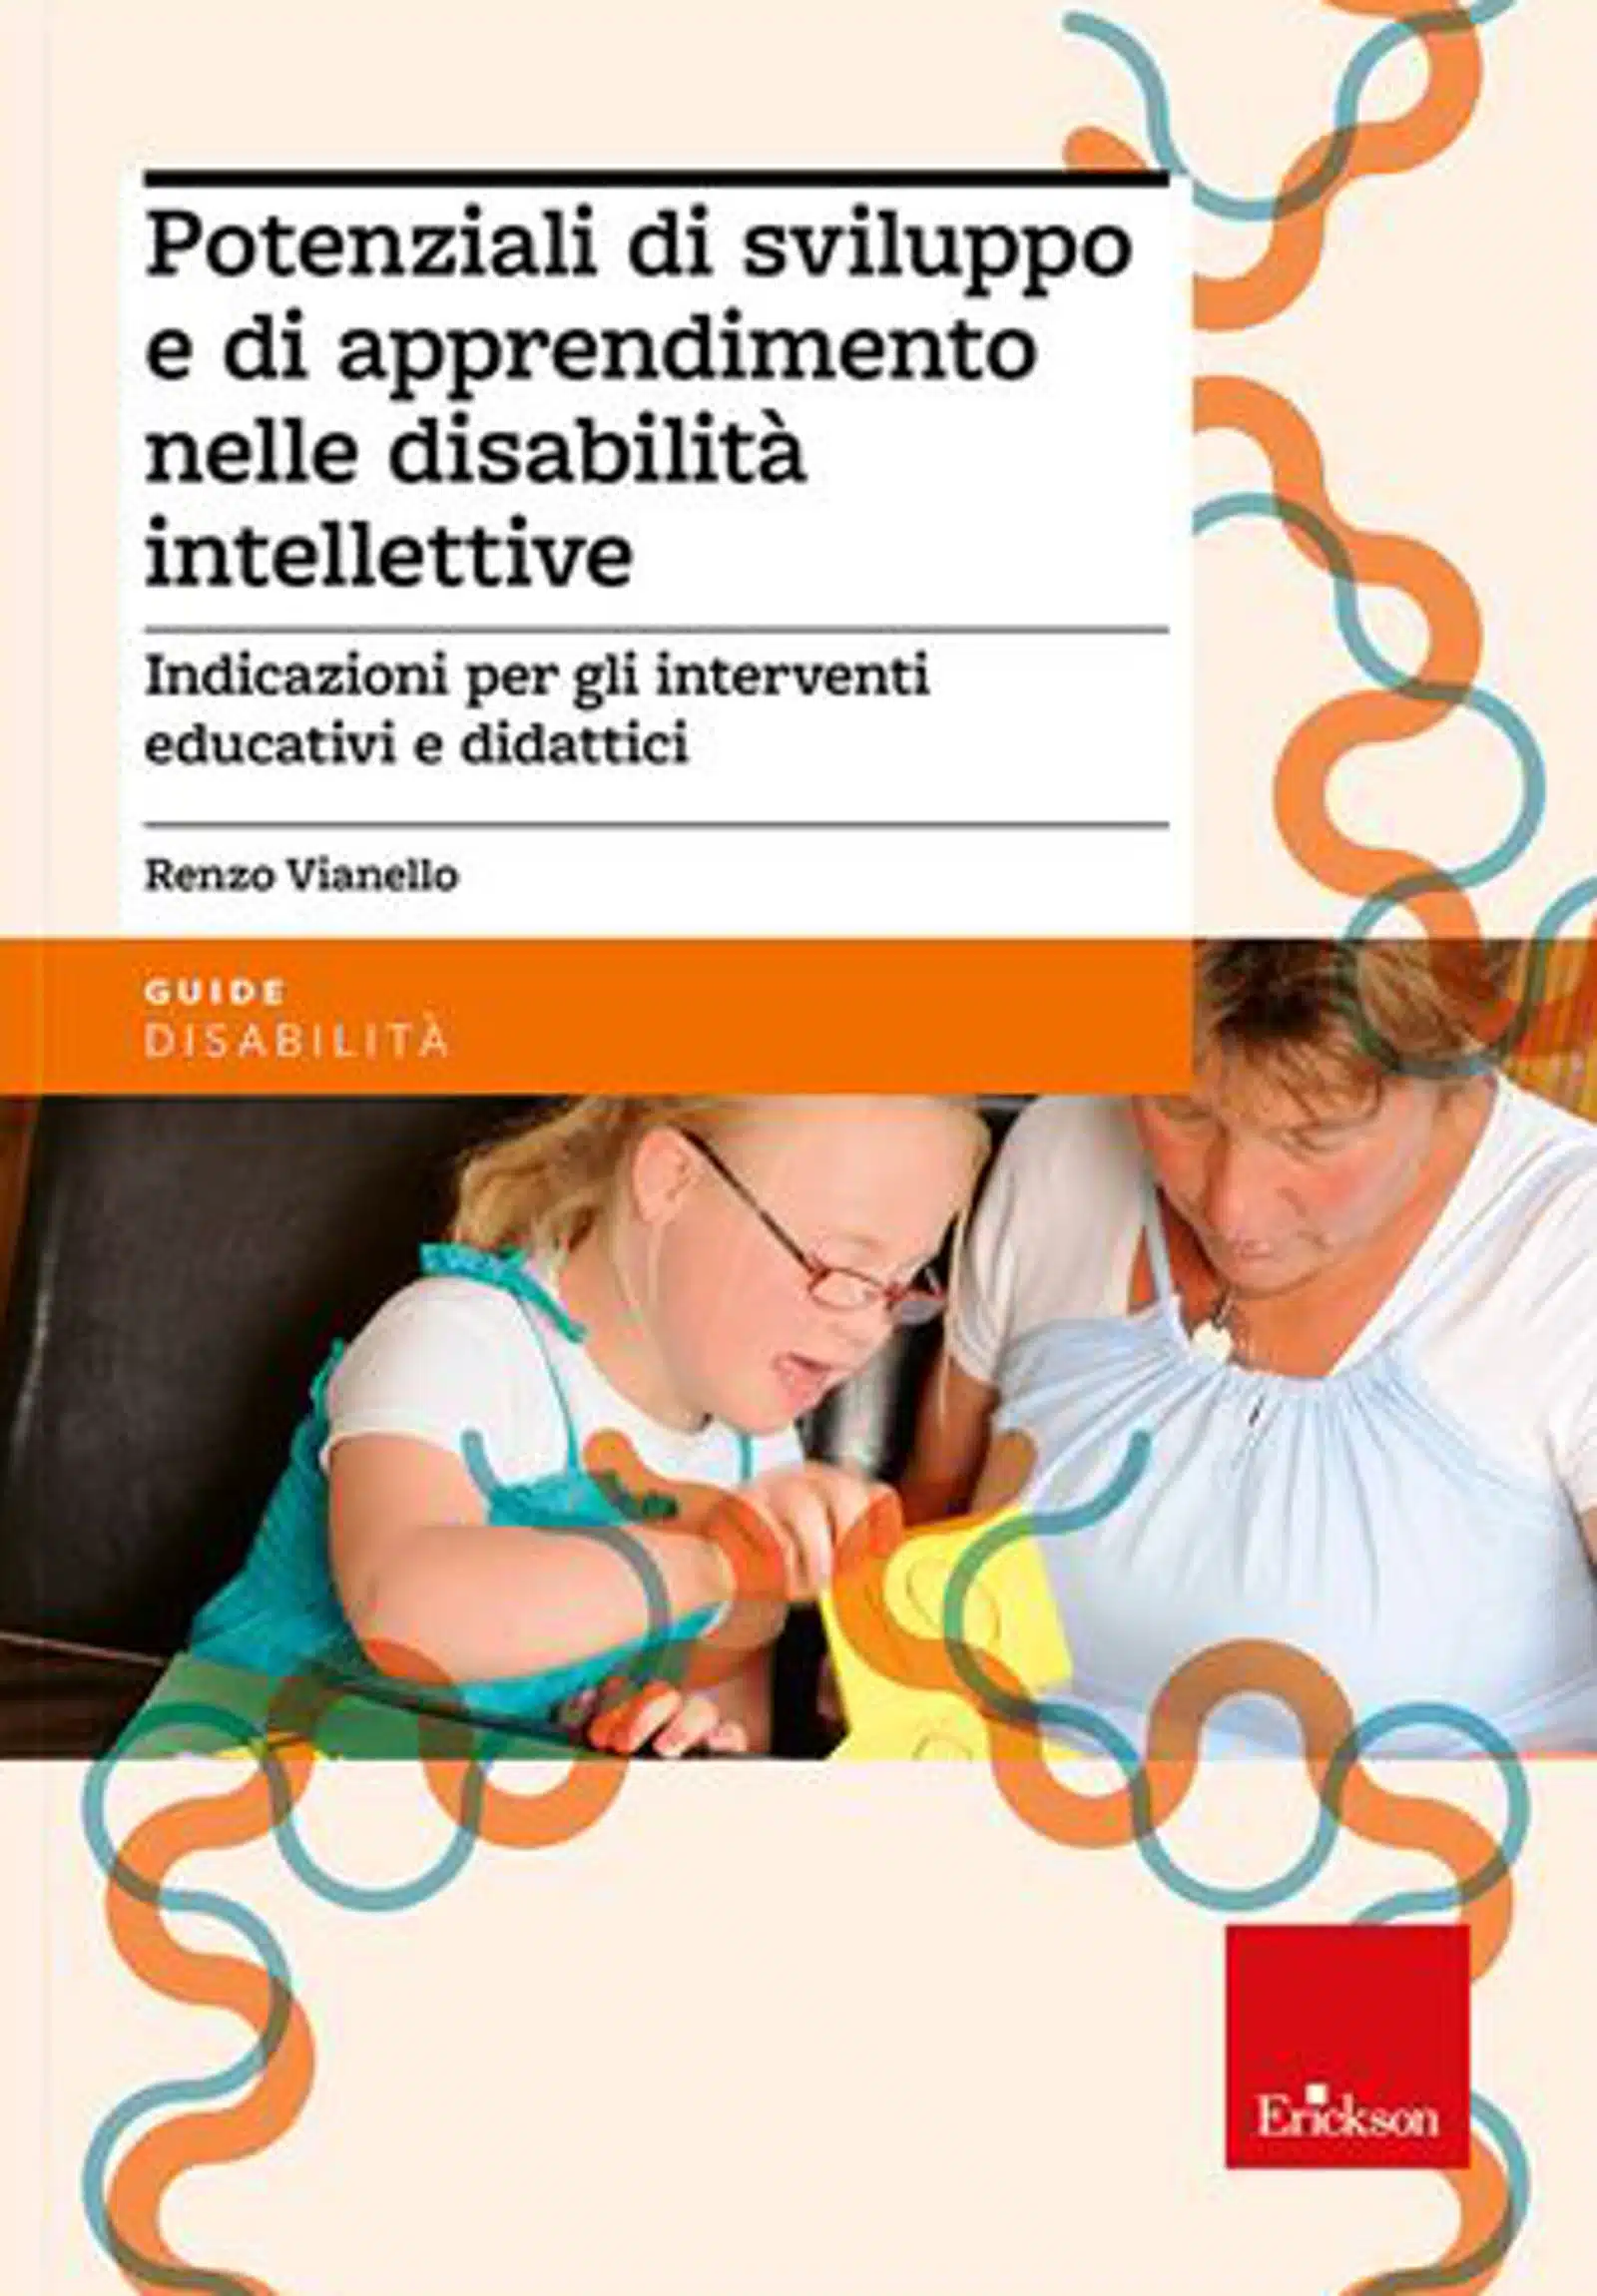 Potenziali di sviluppo e di apprendimento nelle disabilita intellettive 2012 Featured